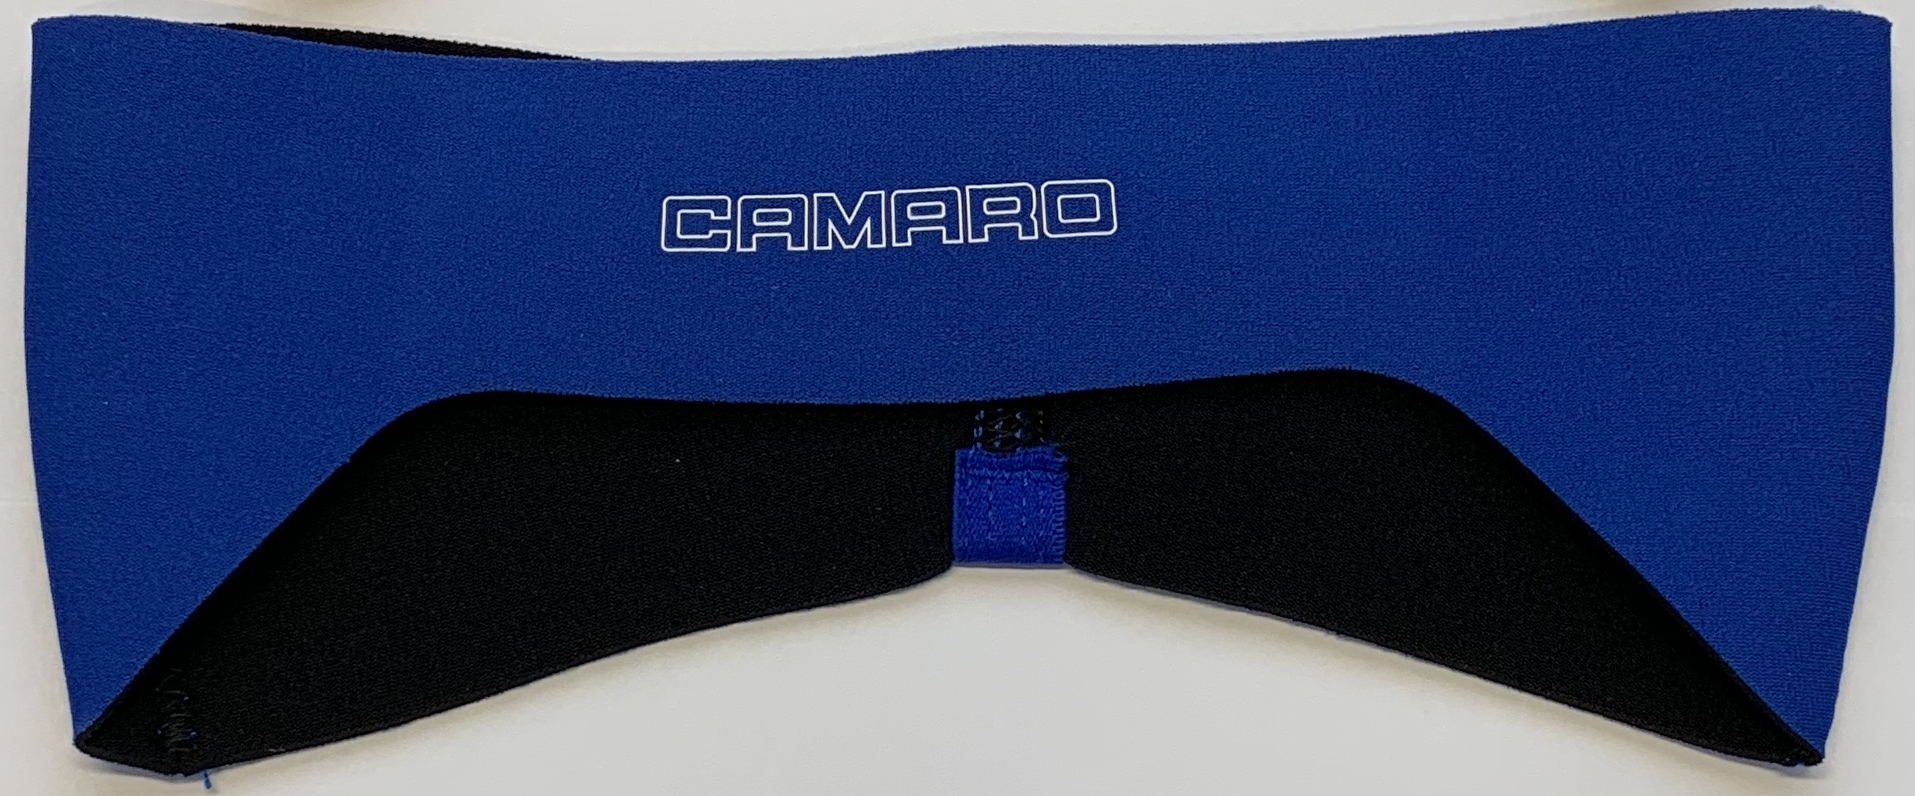 Camaro 2 mm STIRNBAND aus Neopren Headband